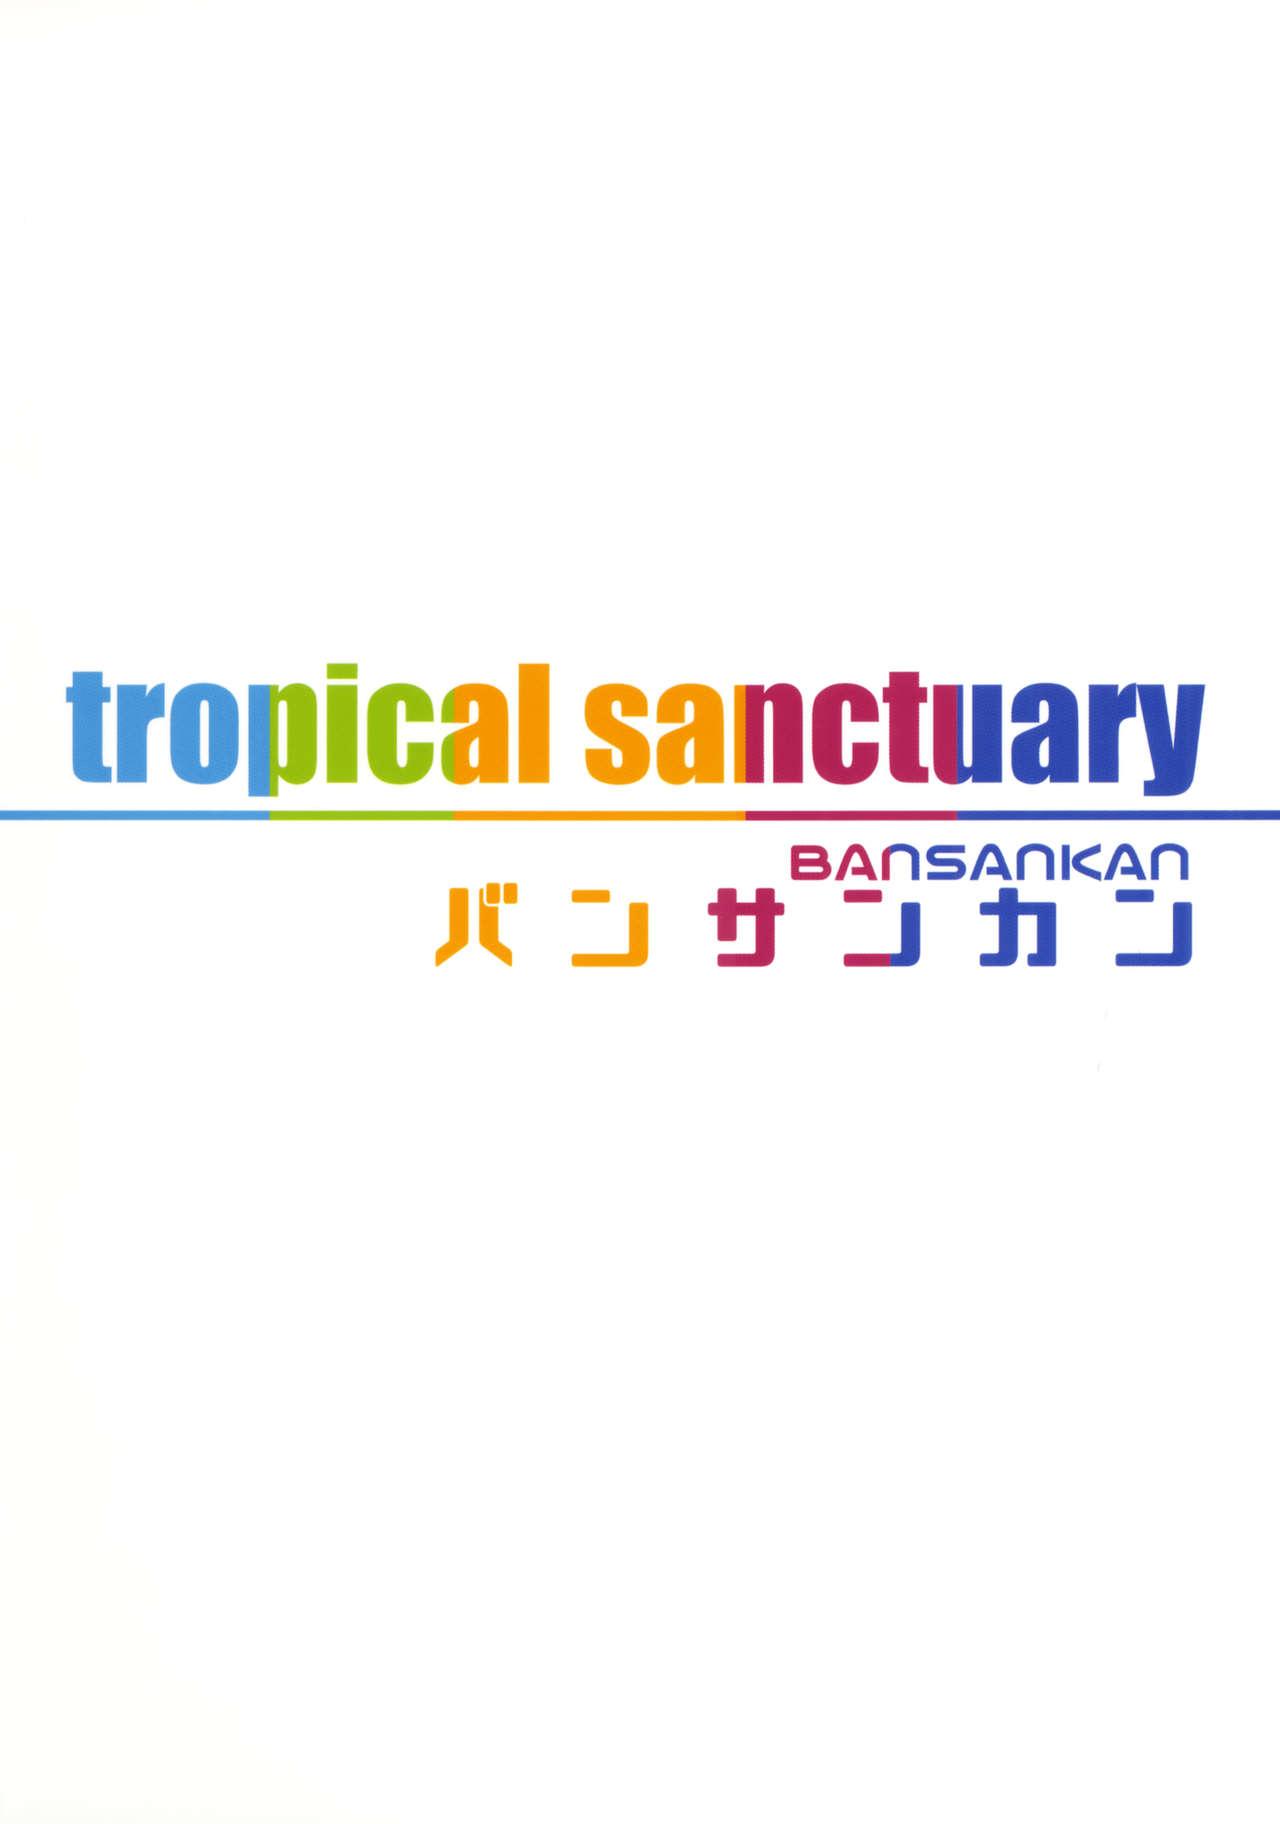 tropical sanctuary 22